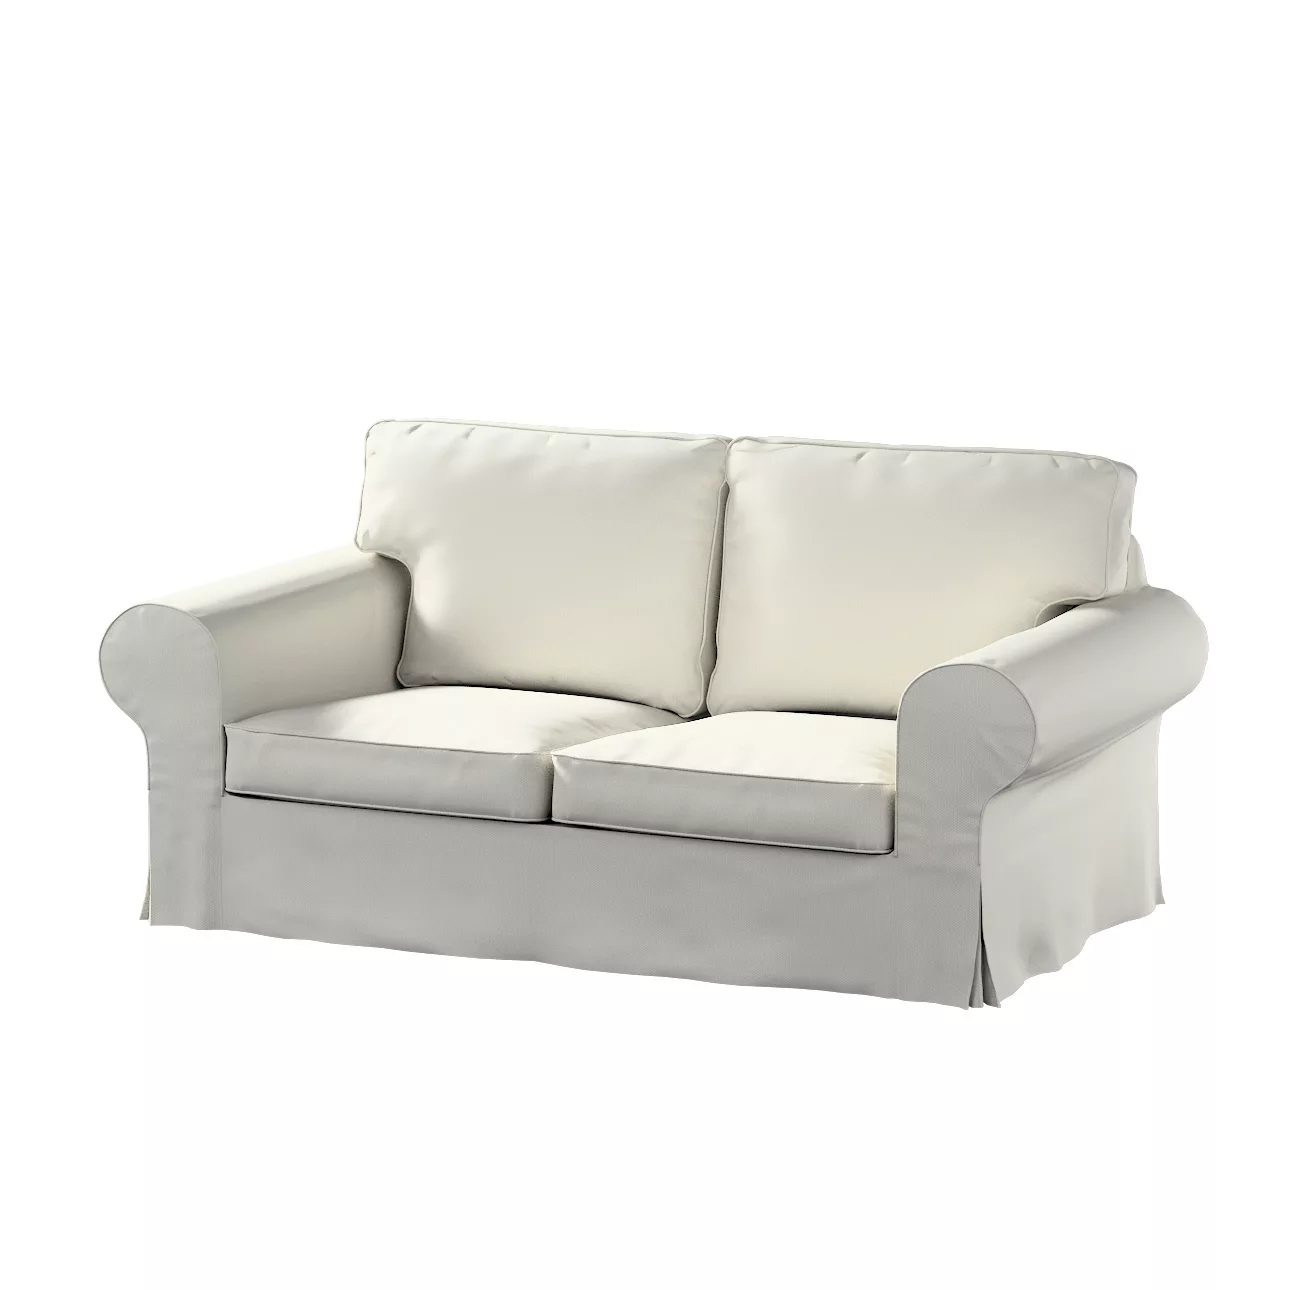 Bezug für Ektorp 2-Sitzer Schlafsofa NEUES Modell, hellgrau, Sofabezug für günstig online kaufen